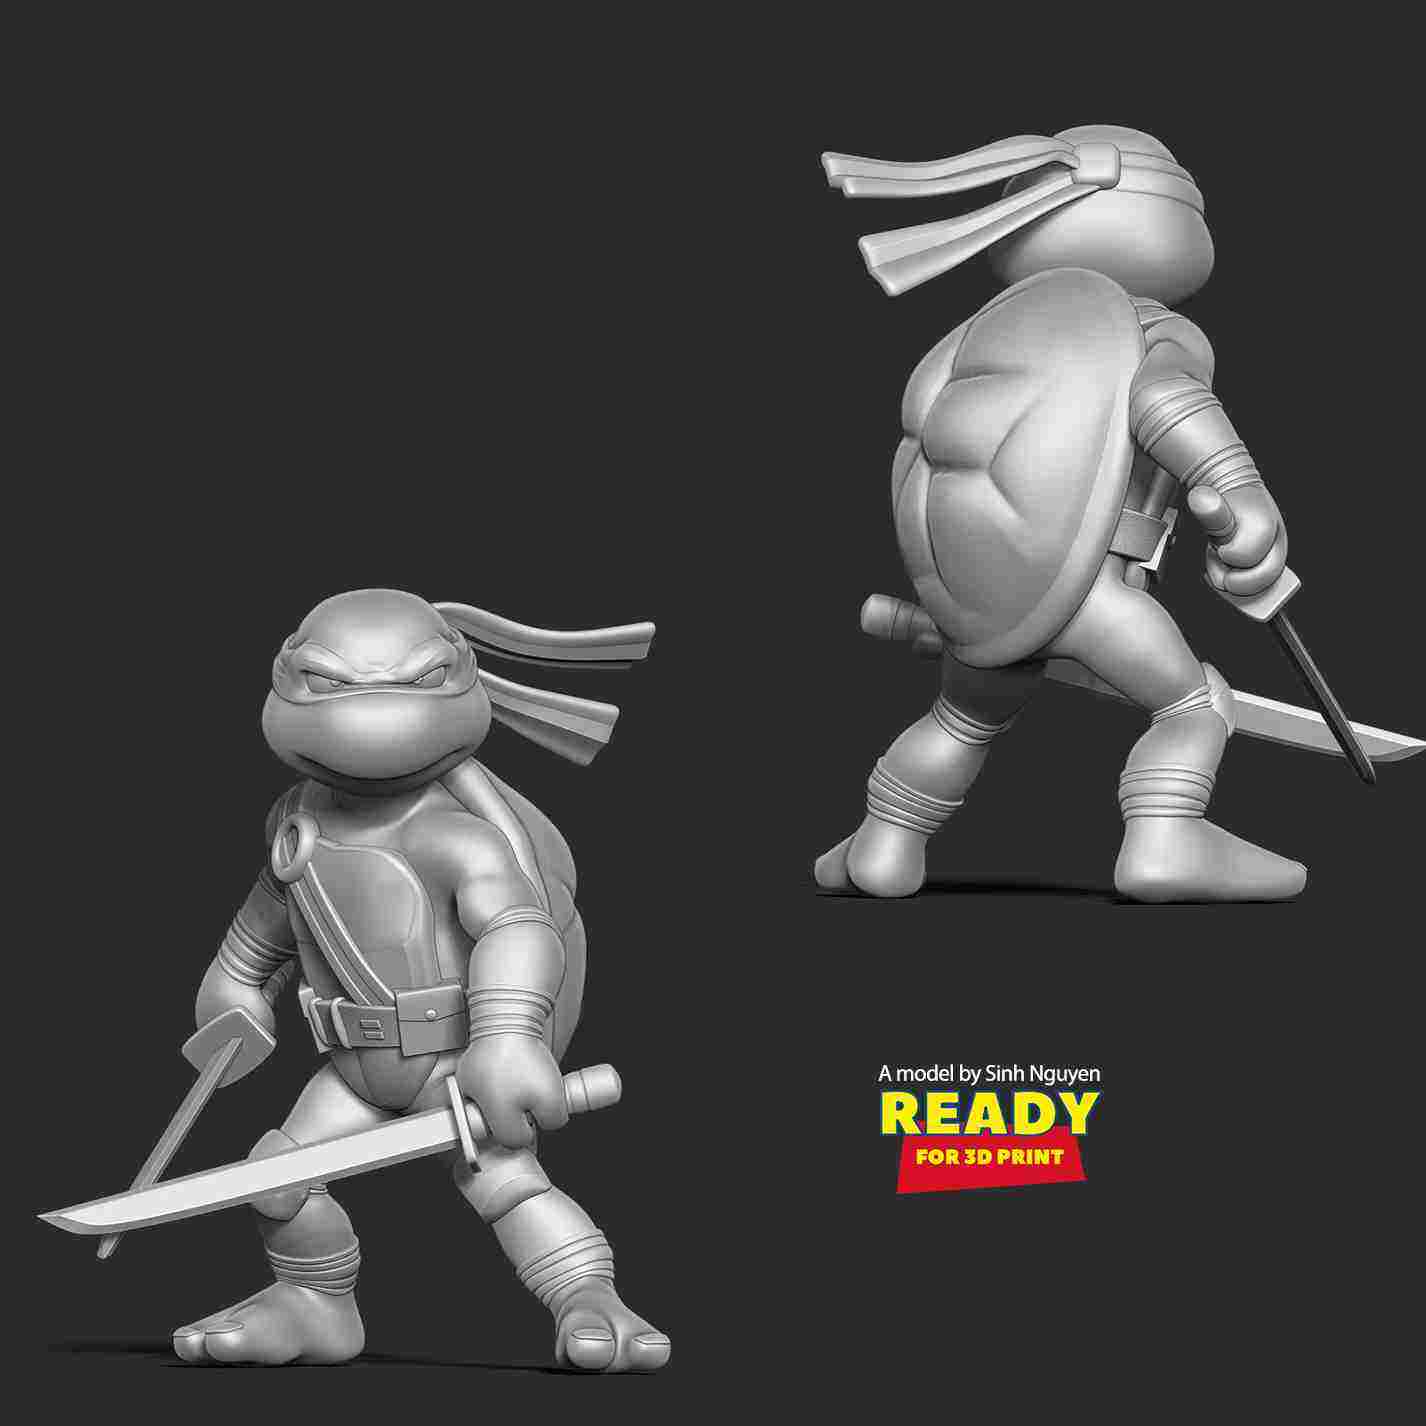 Leonardo - Teenage Mutant Ninja Turtles | 3D models download | Creality ...